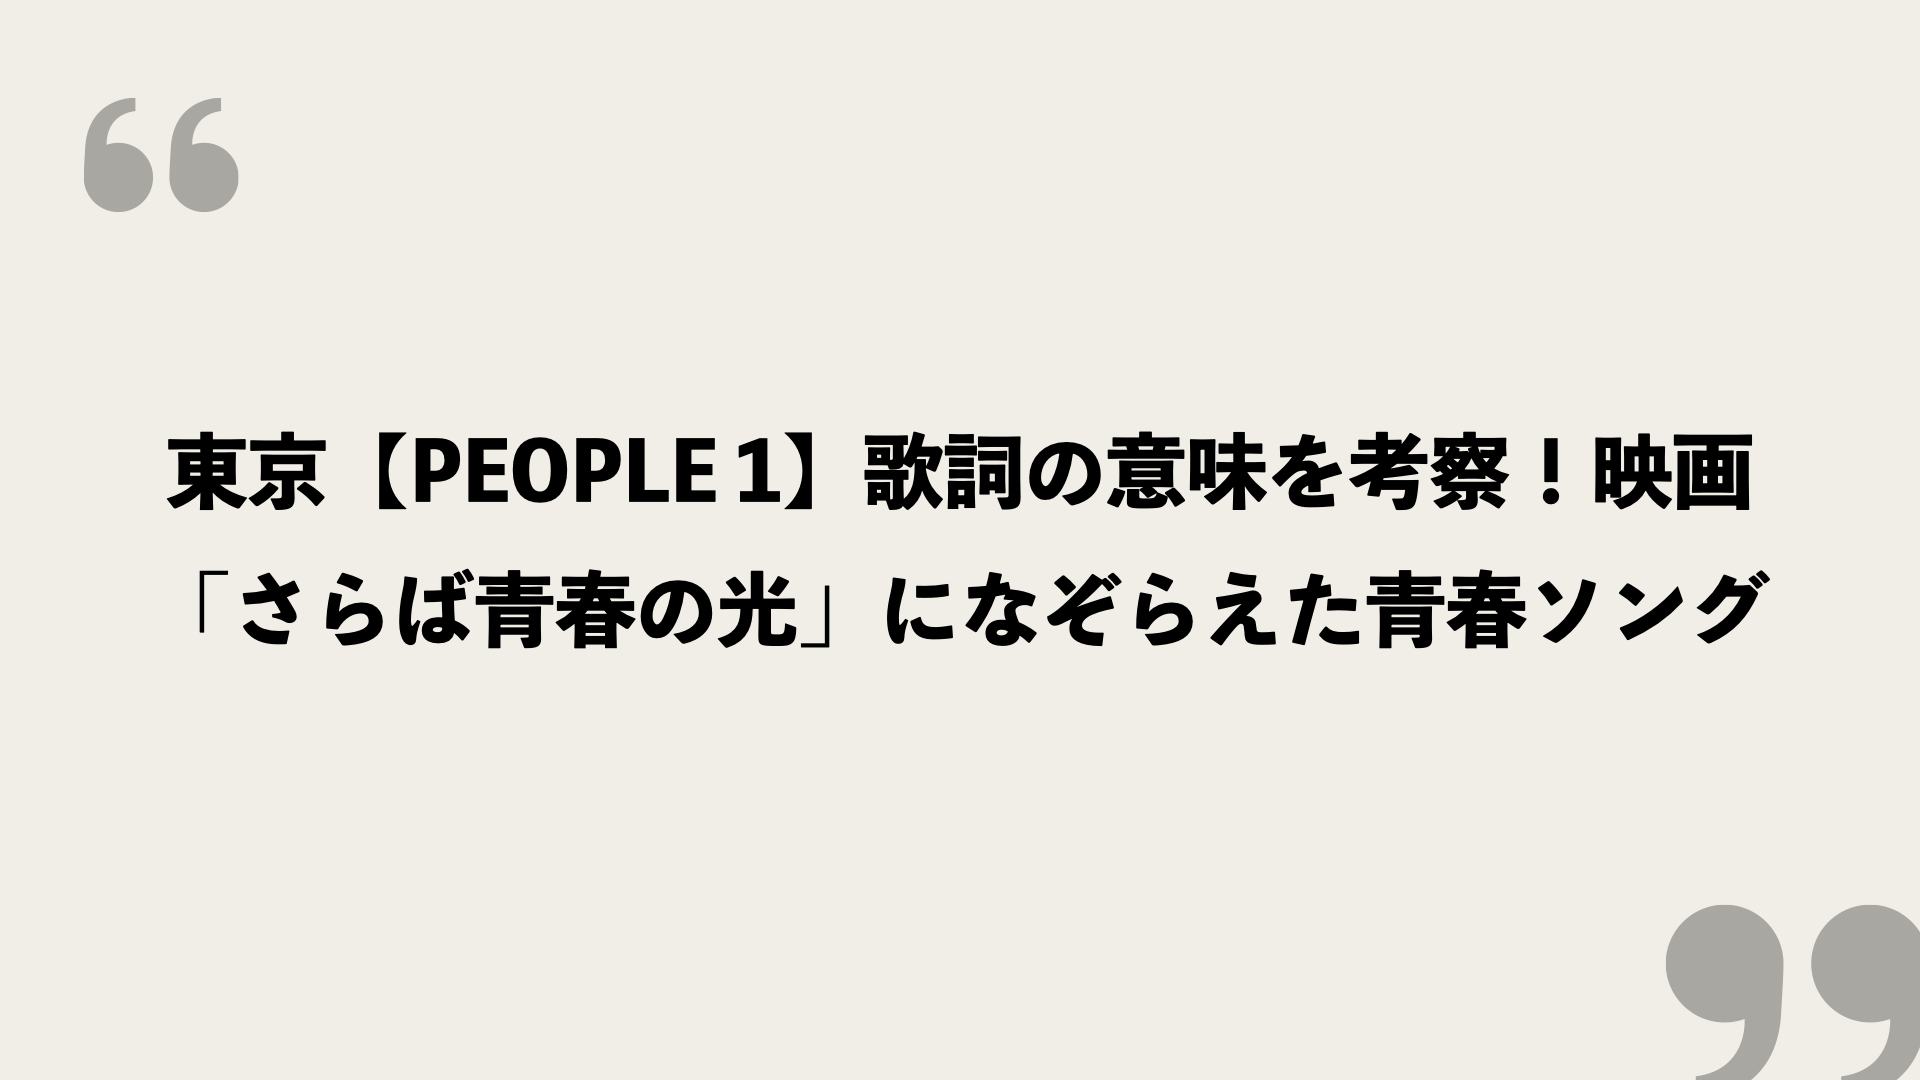 東京 People 1 歌詞の意味を考察 映画 さらば青春の光 になぞらえた青春ソング Framu Media